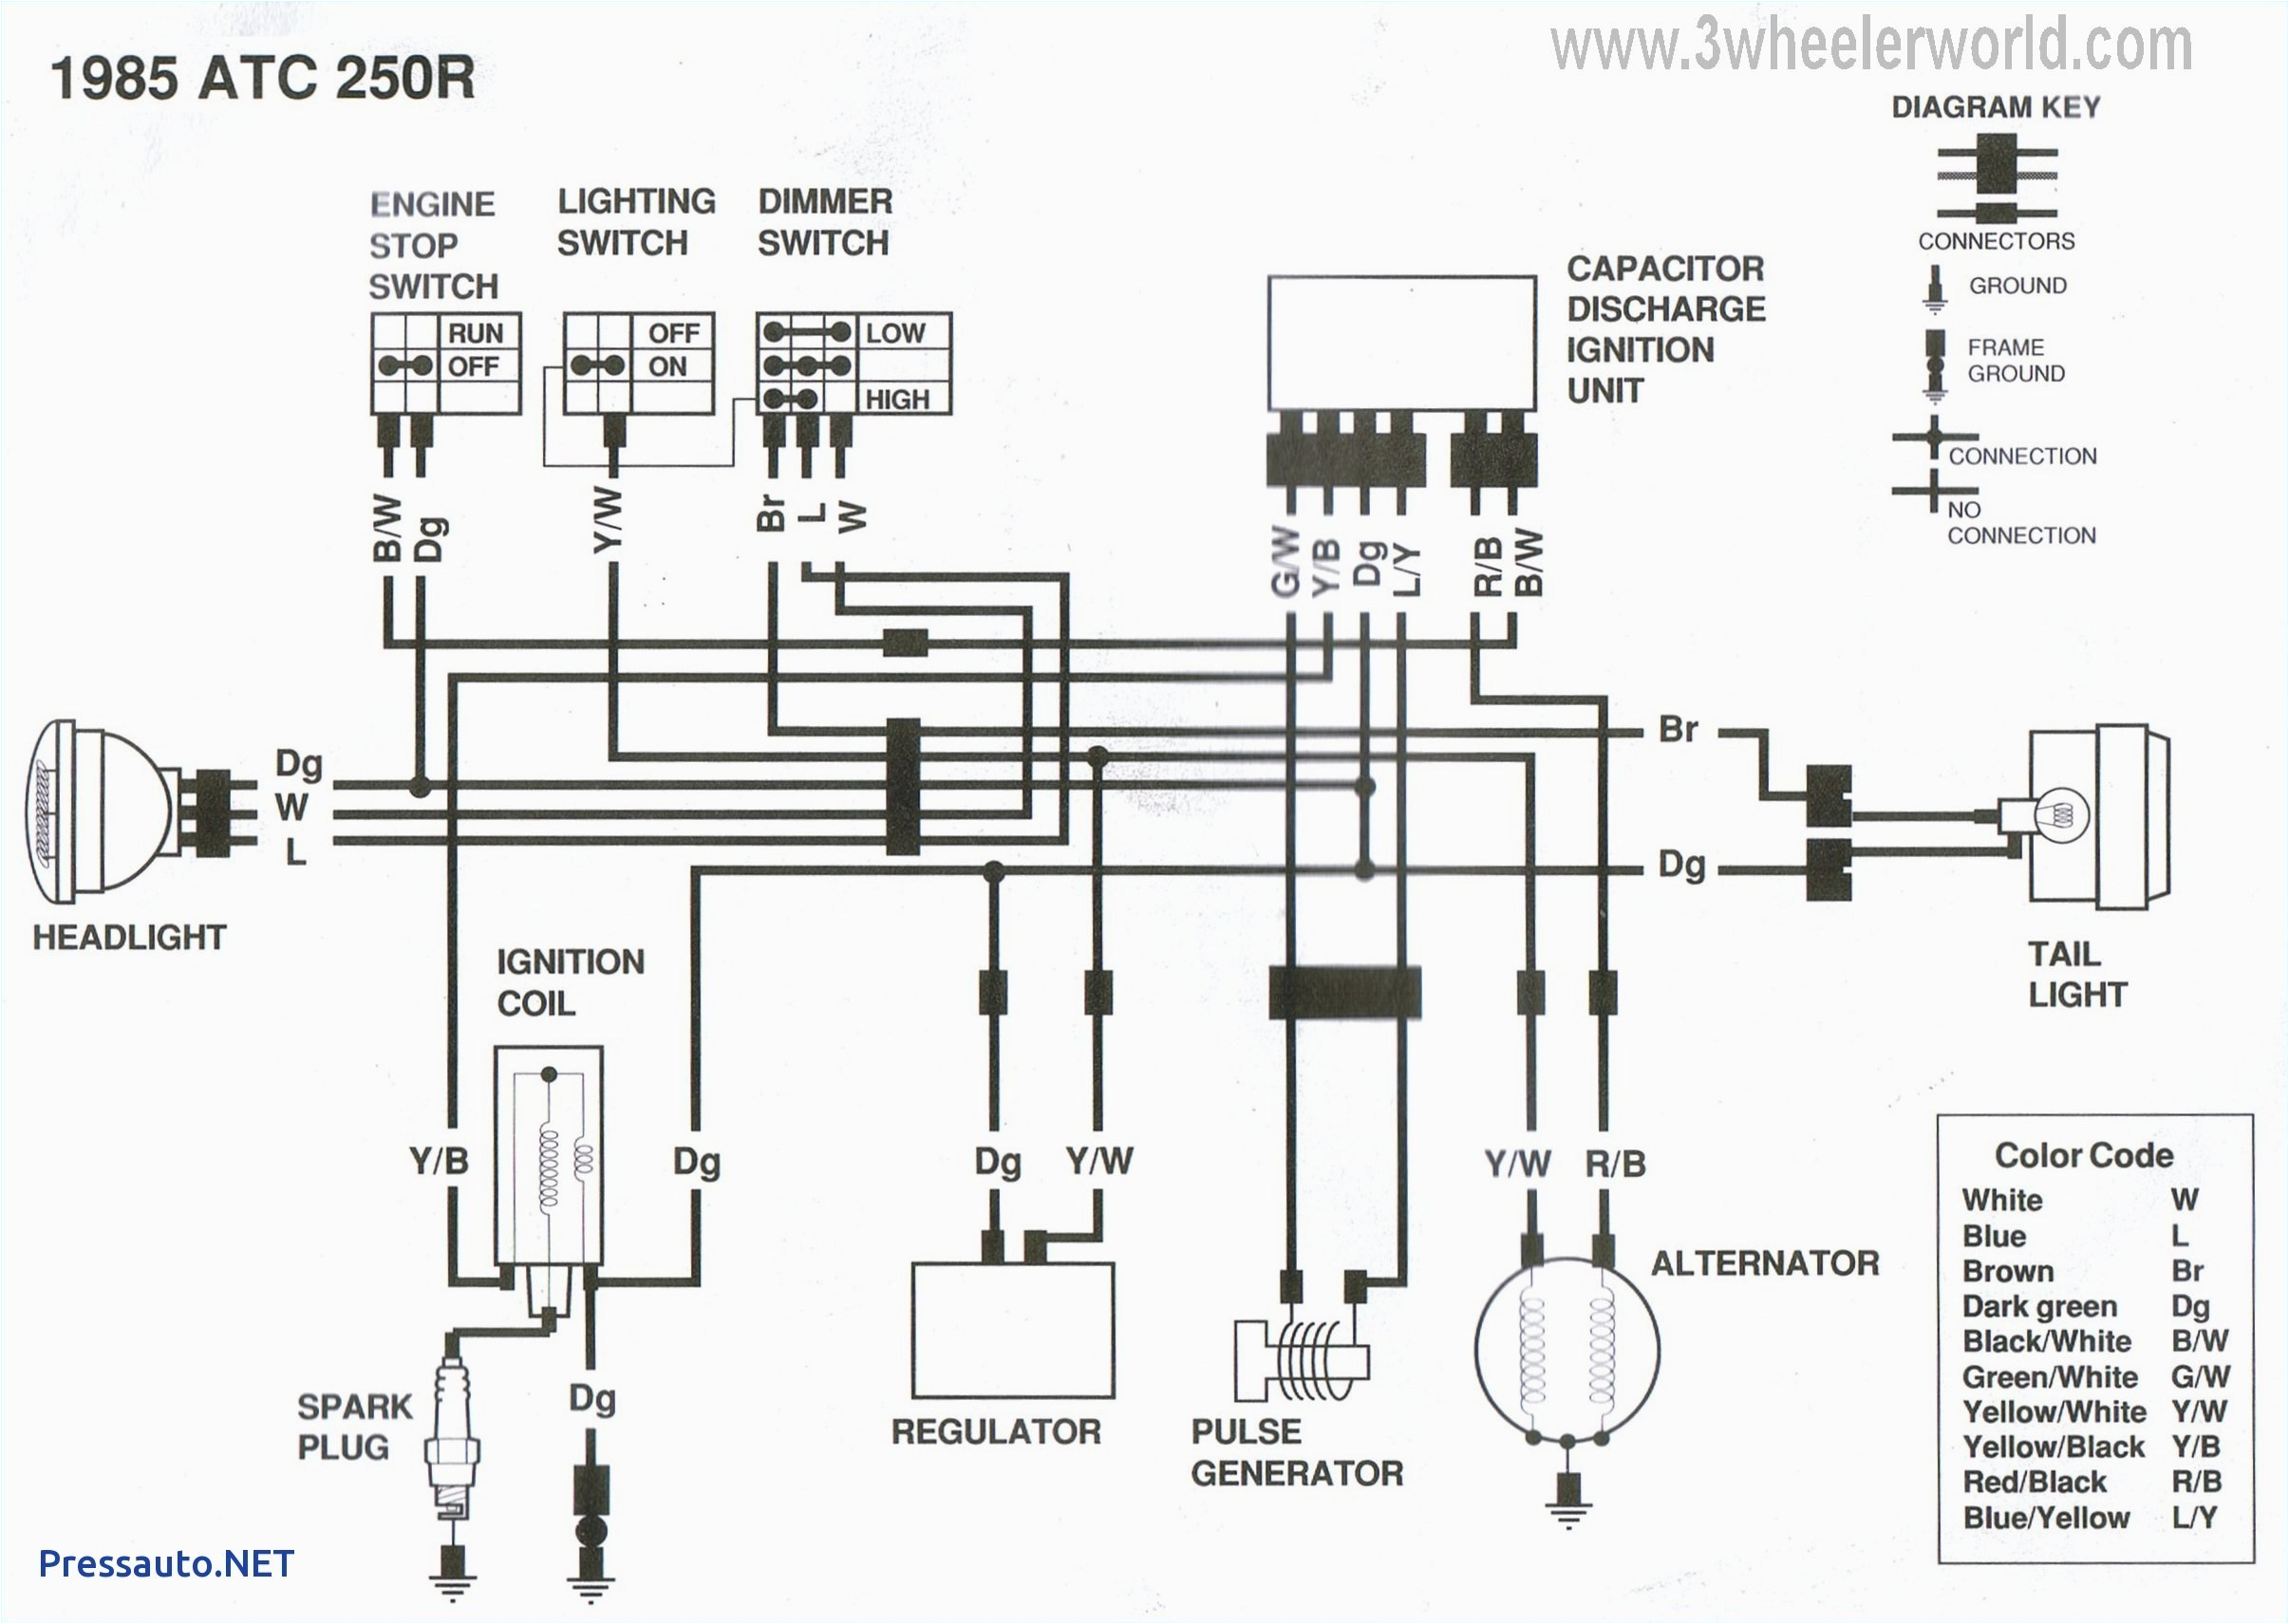 2003 yamaha kodiak 450 wiring diagram wiring diagram option2003 yamaha kodiak wiring diagram free download wiring